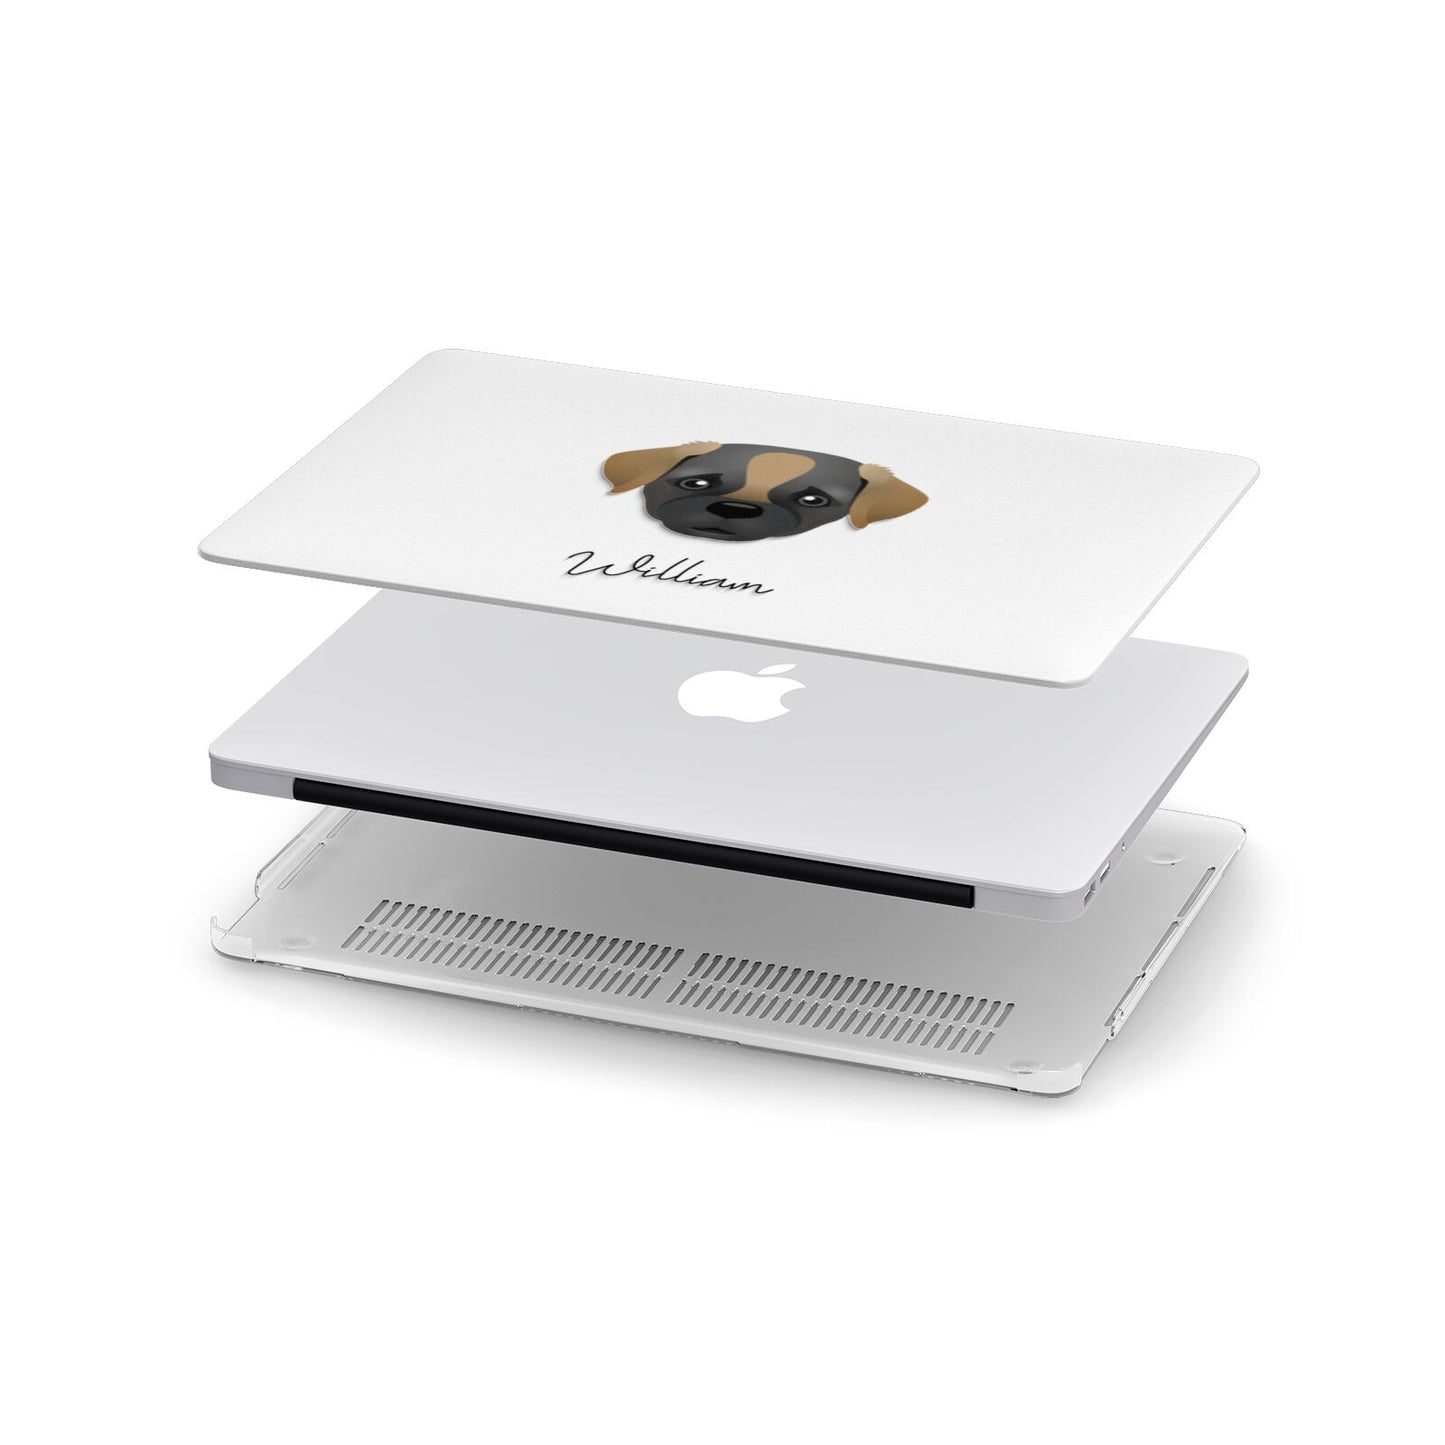 Pugapoo Personalised Apple MacBook Case in Detail